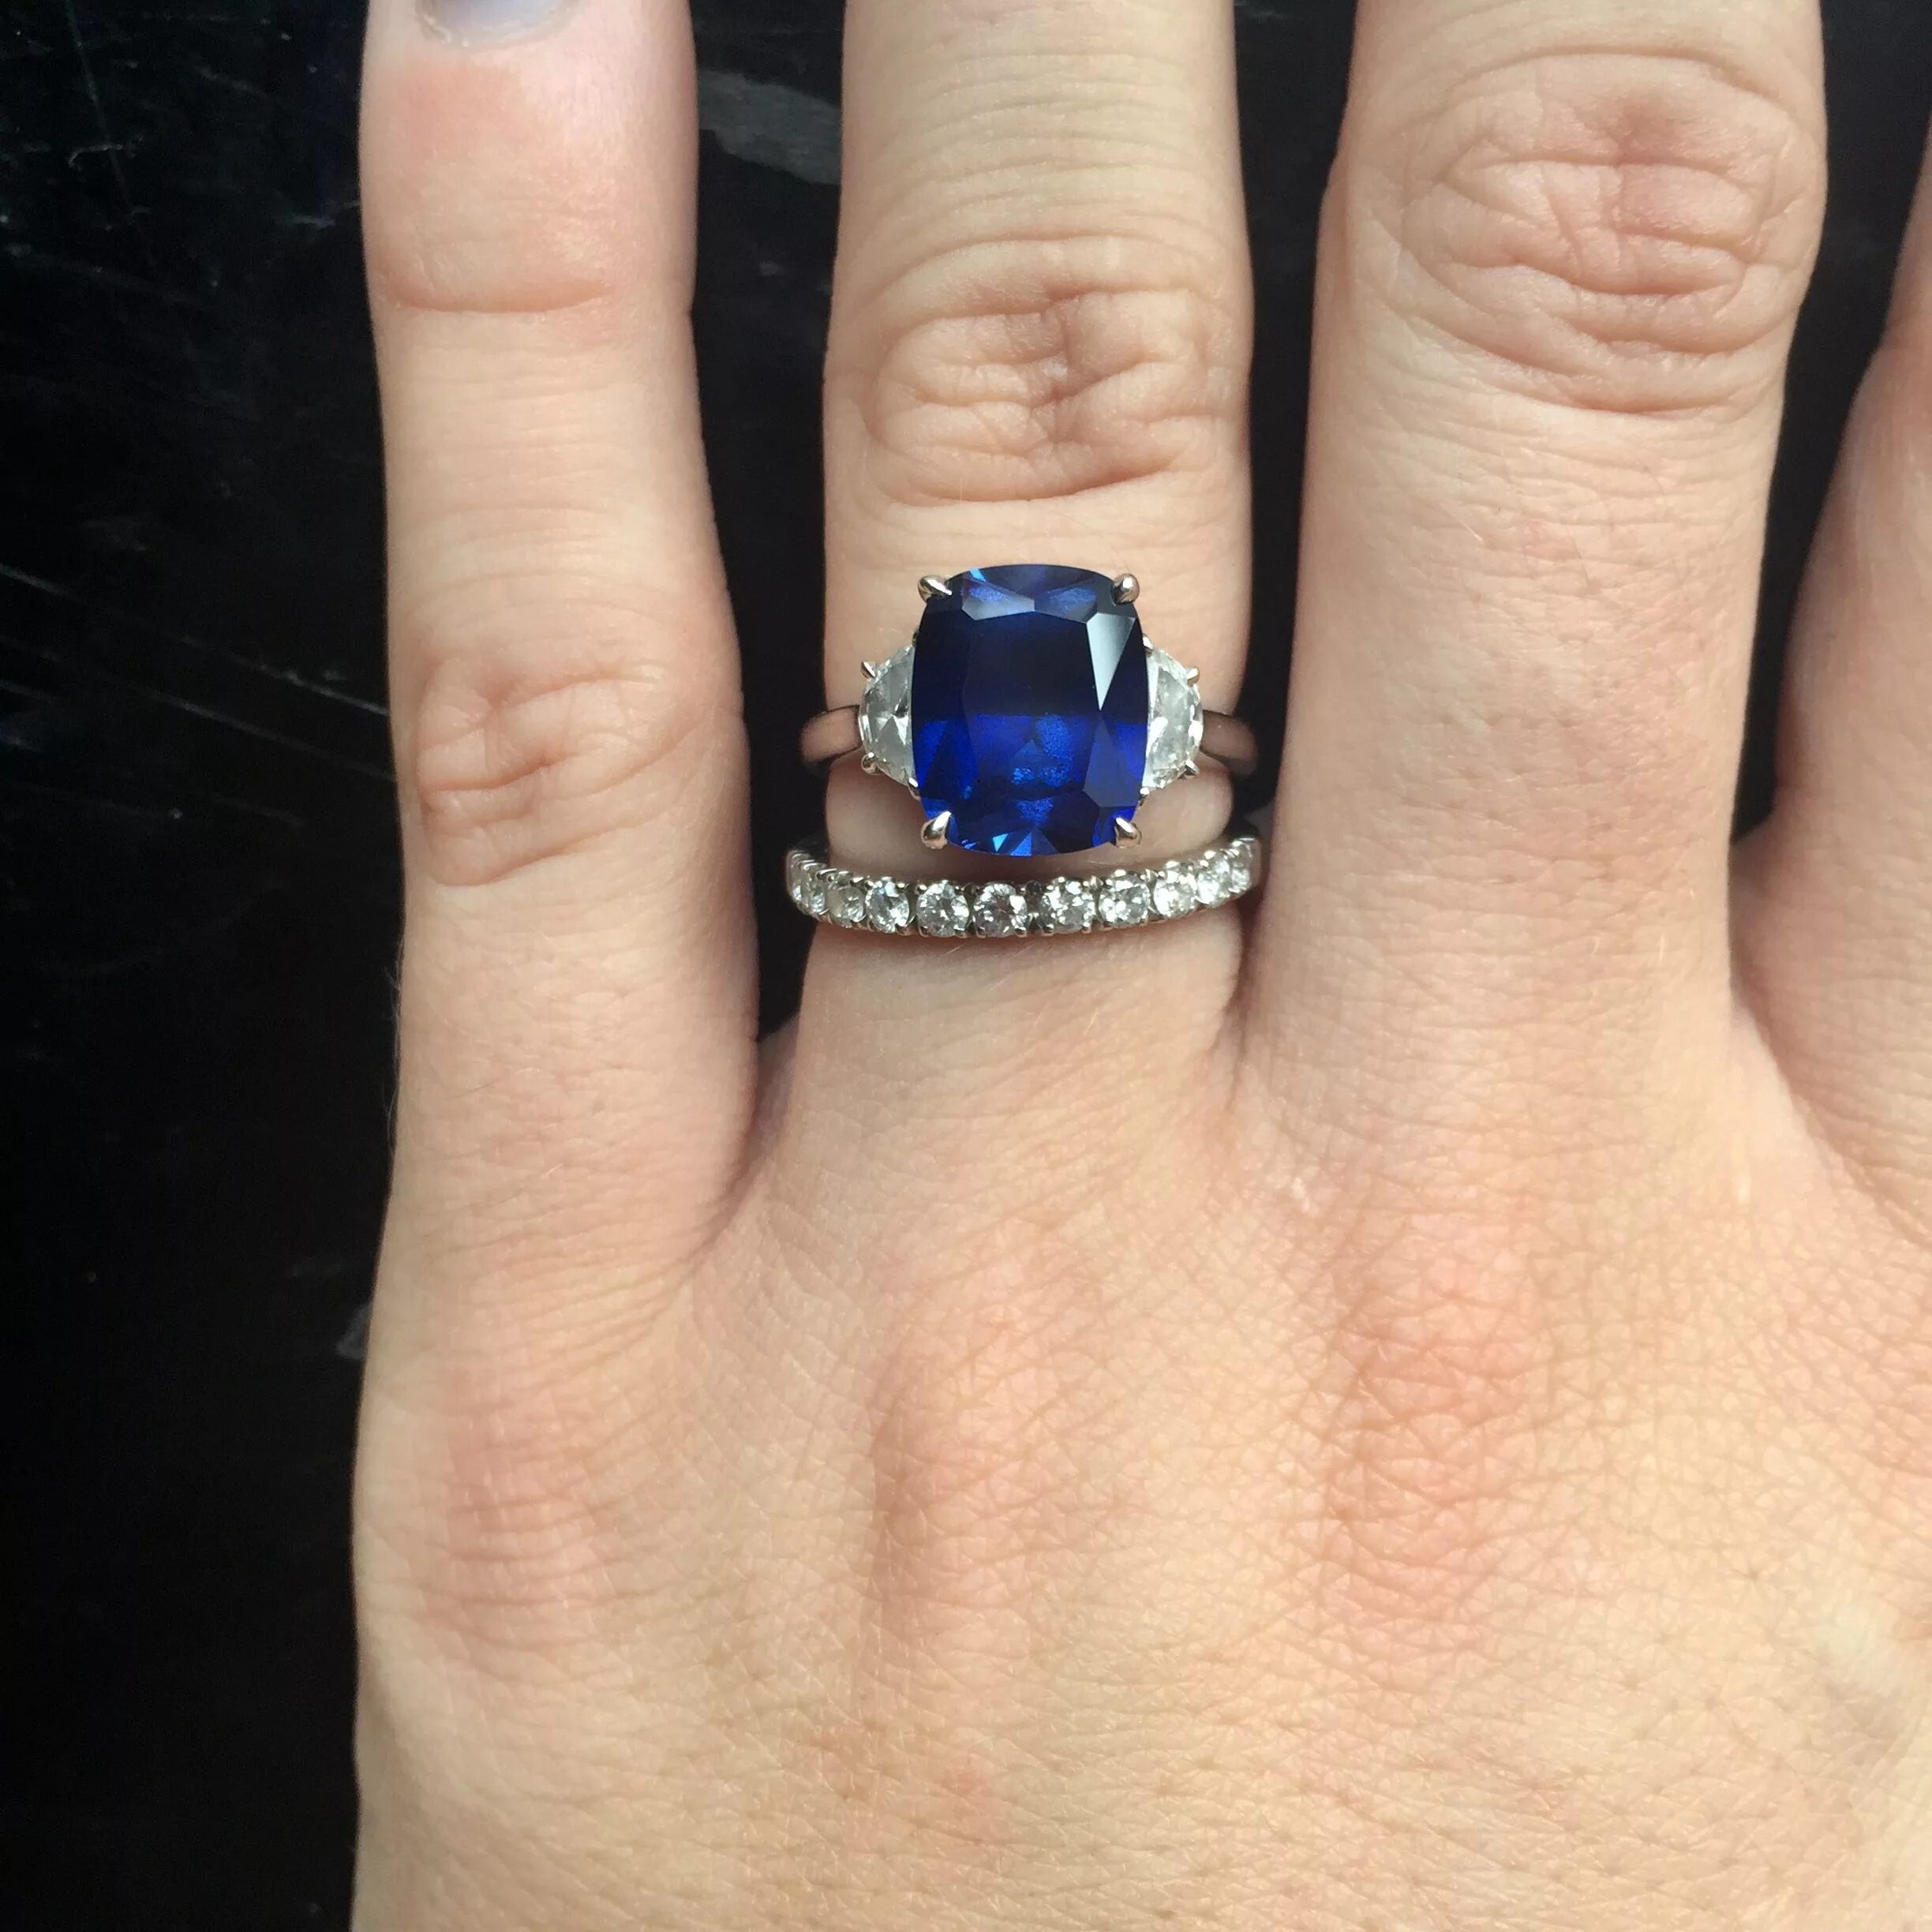 Сапфир на пальце. Перстень Акселя Роуза карат сапфир. Обручальное кольцо с синим сапфиром. Кольцо с сапфиром на руке. Кольцо с сапфиром на пальце.